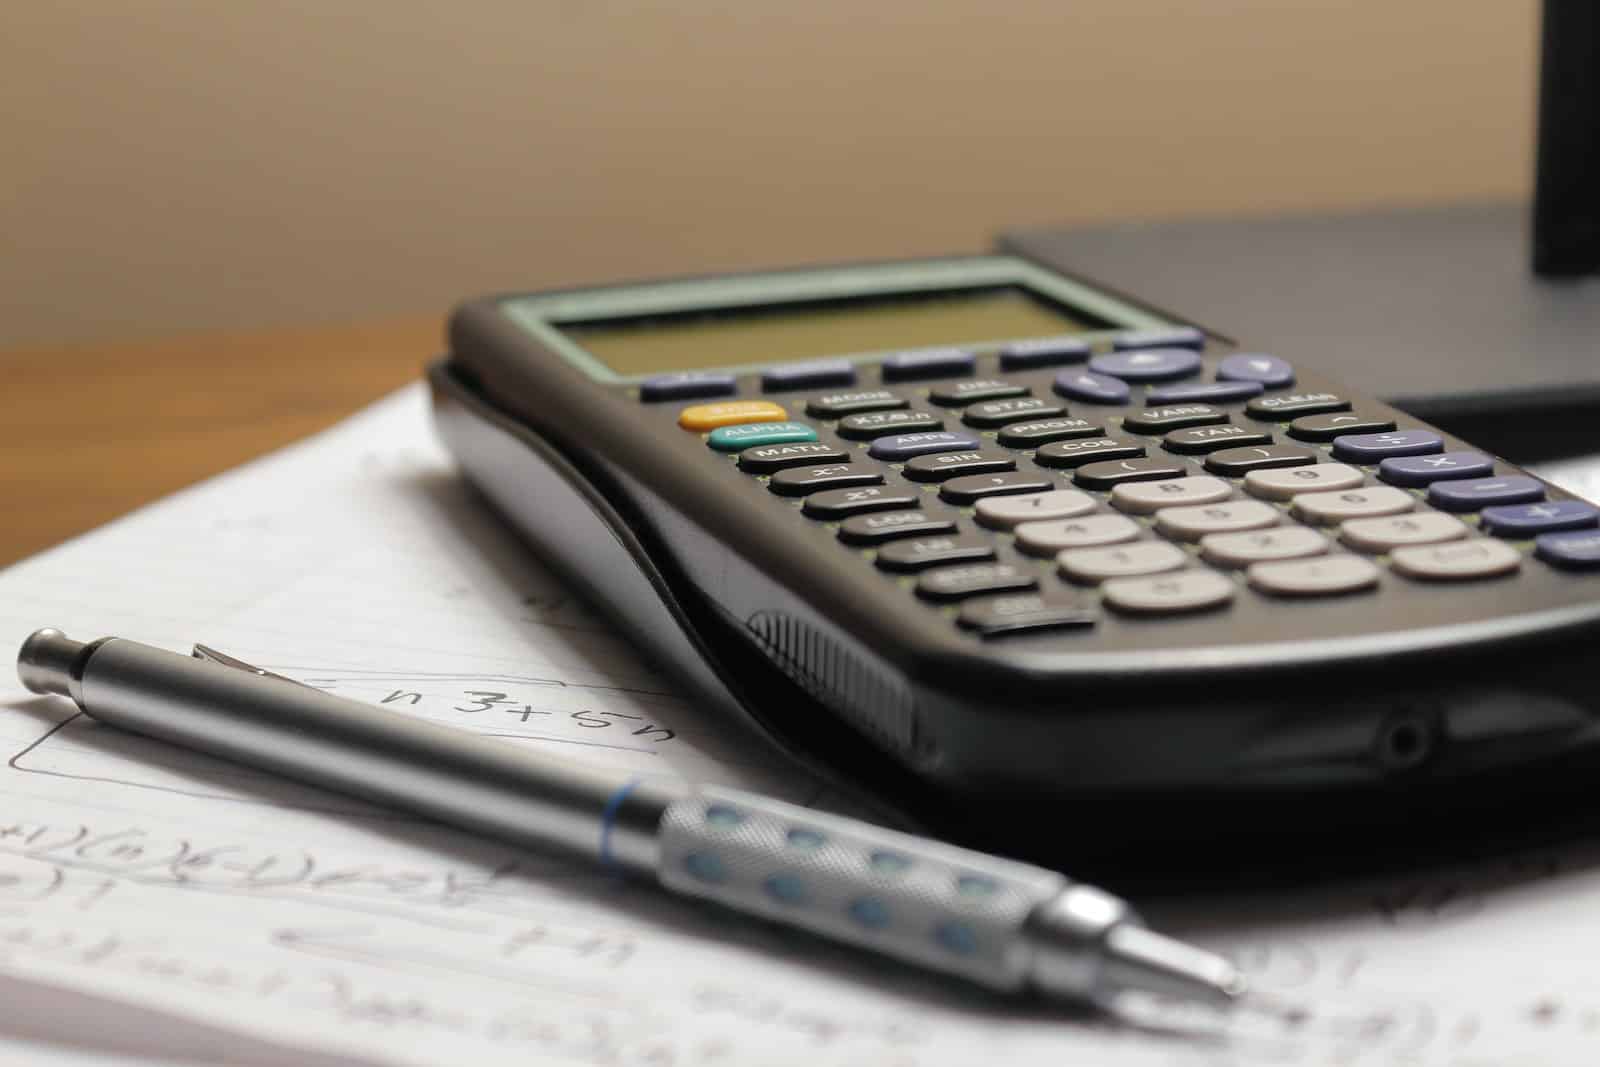 La capacité d'emprunt : comment calculer la somme que vous pouvez emprunter ?